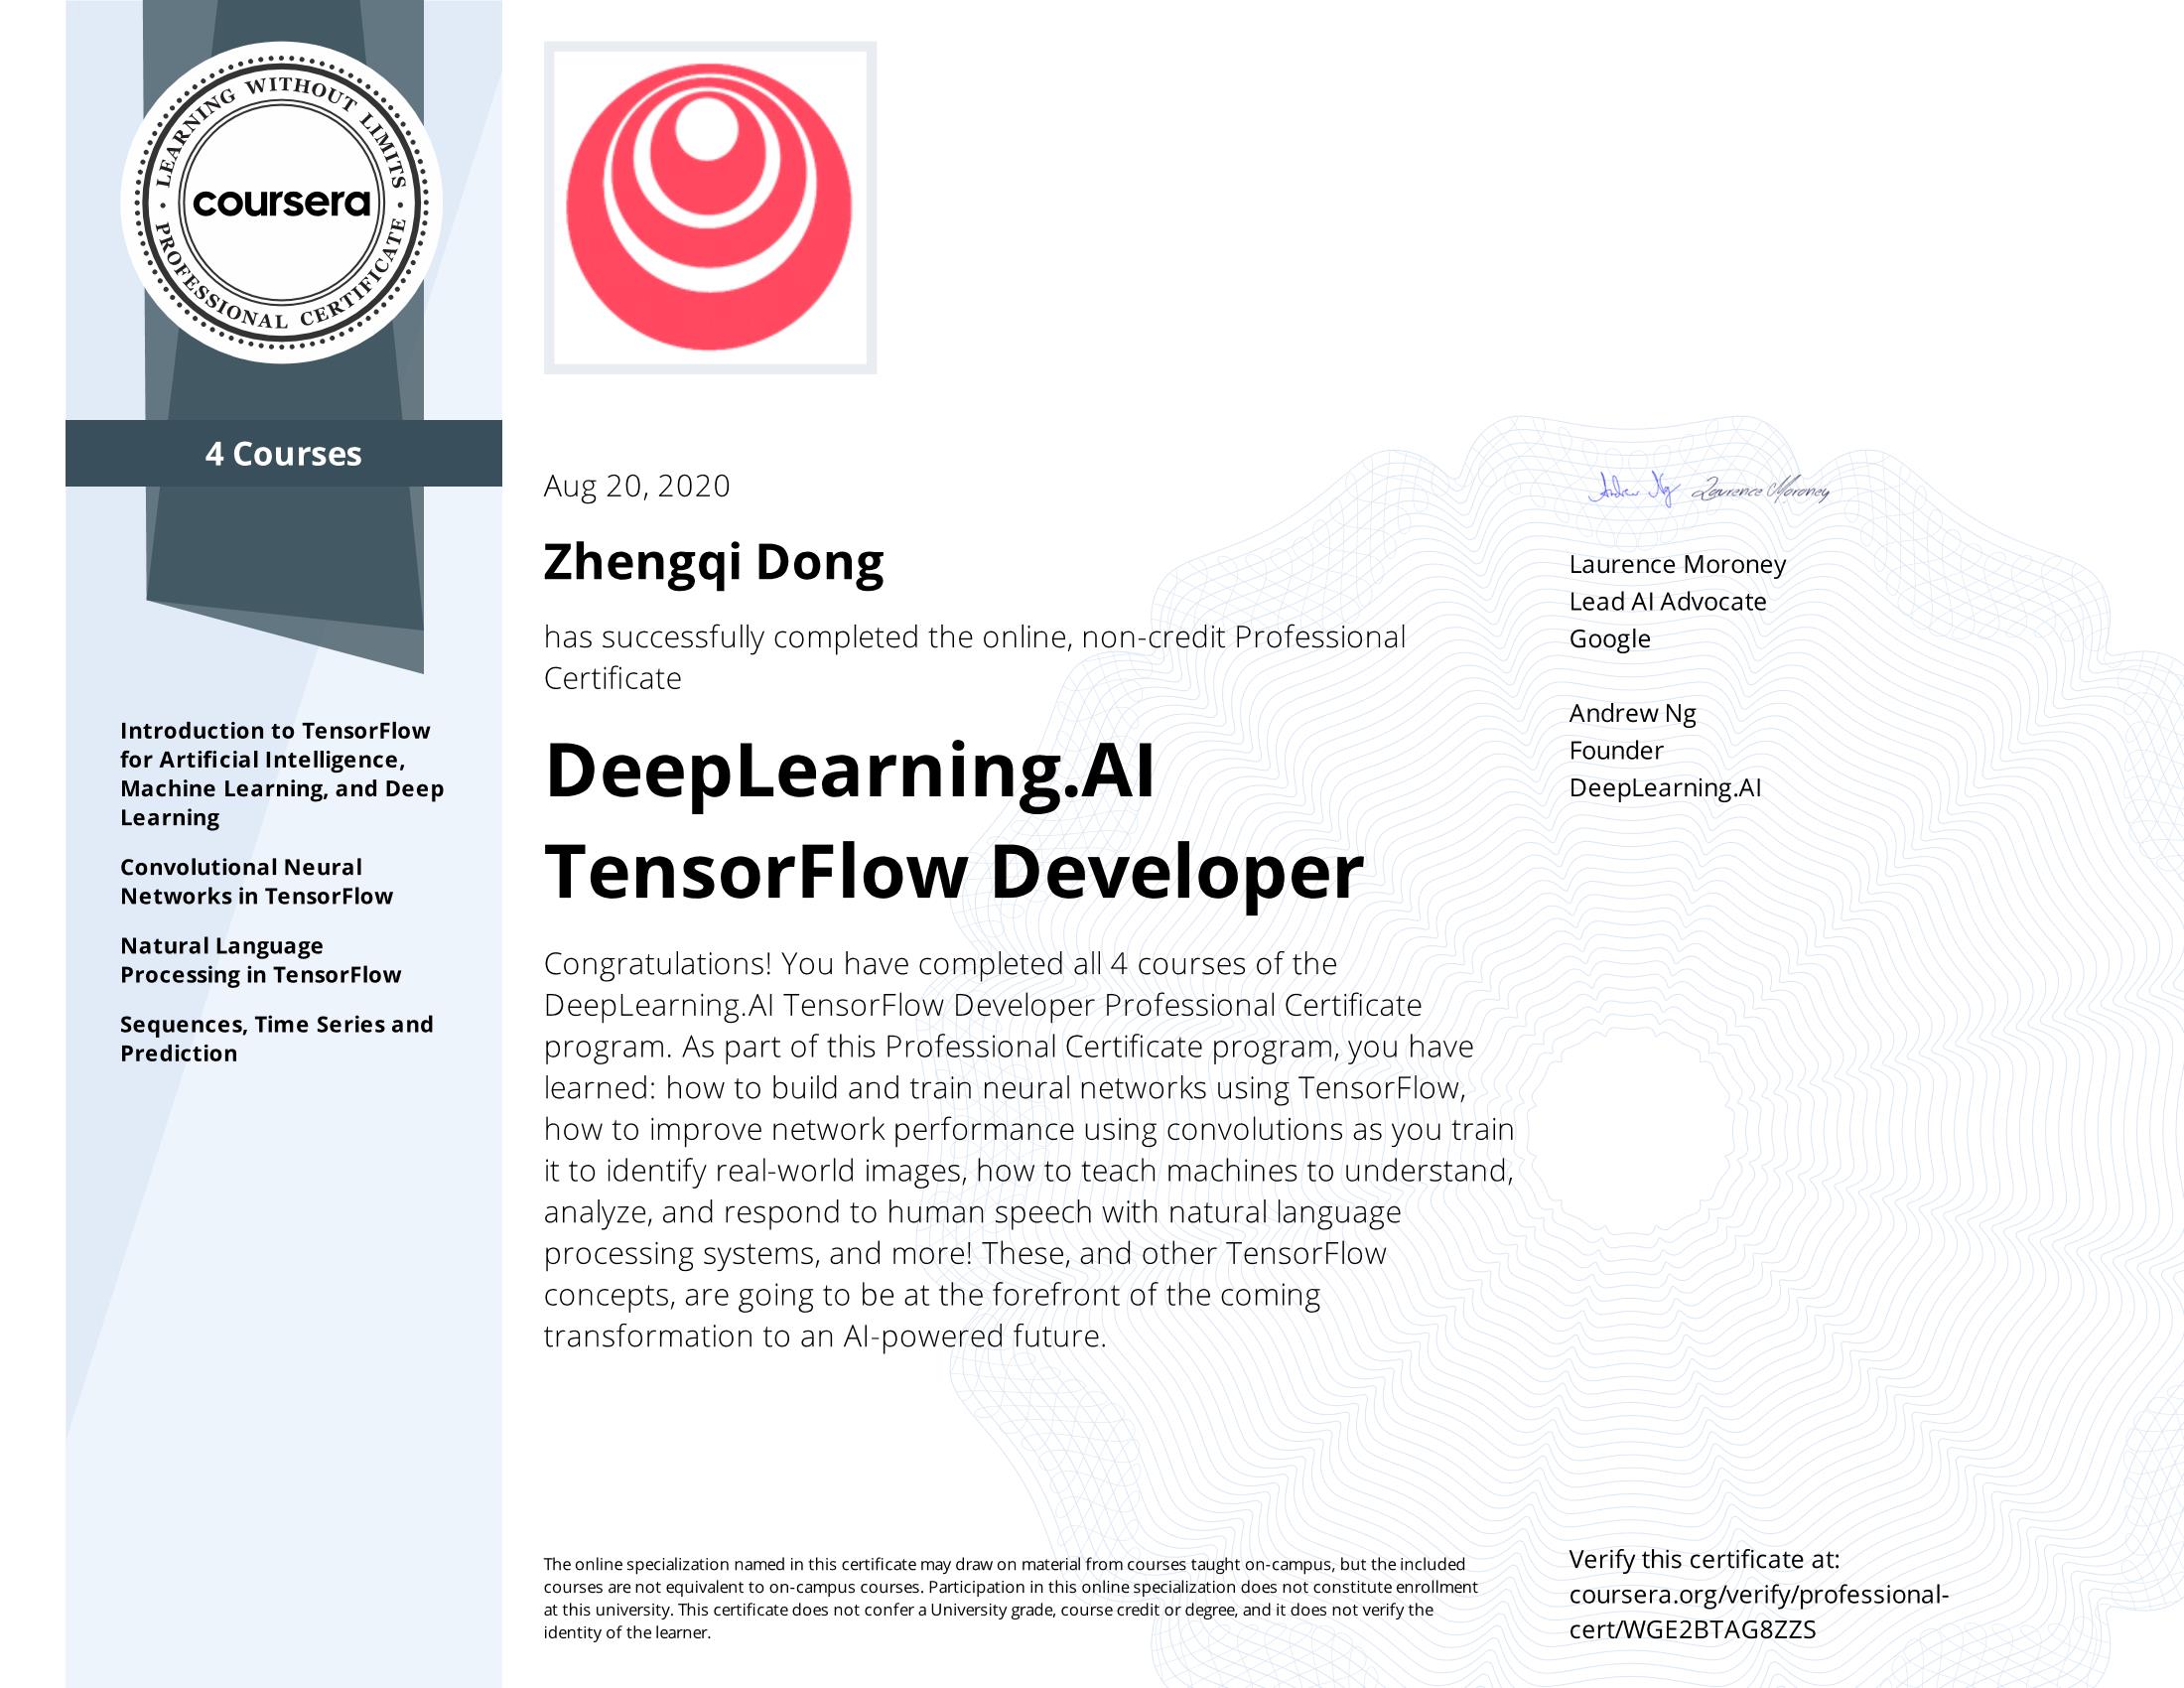 DeepLearning.AI Tensorflow Developer Certificate